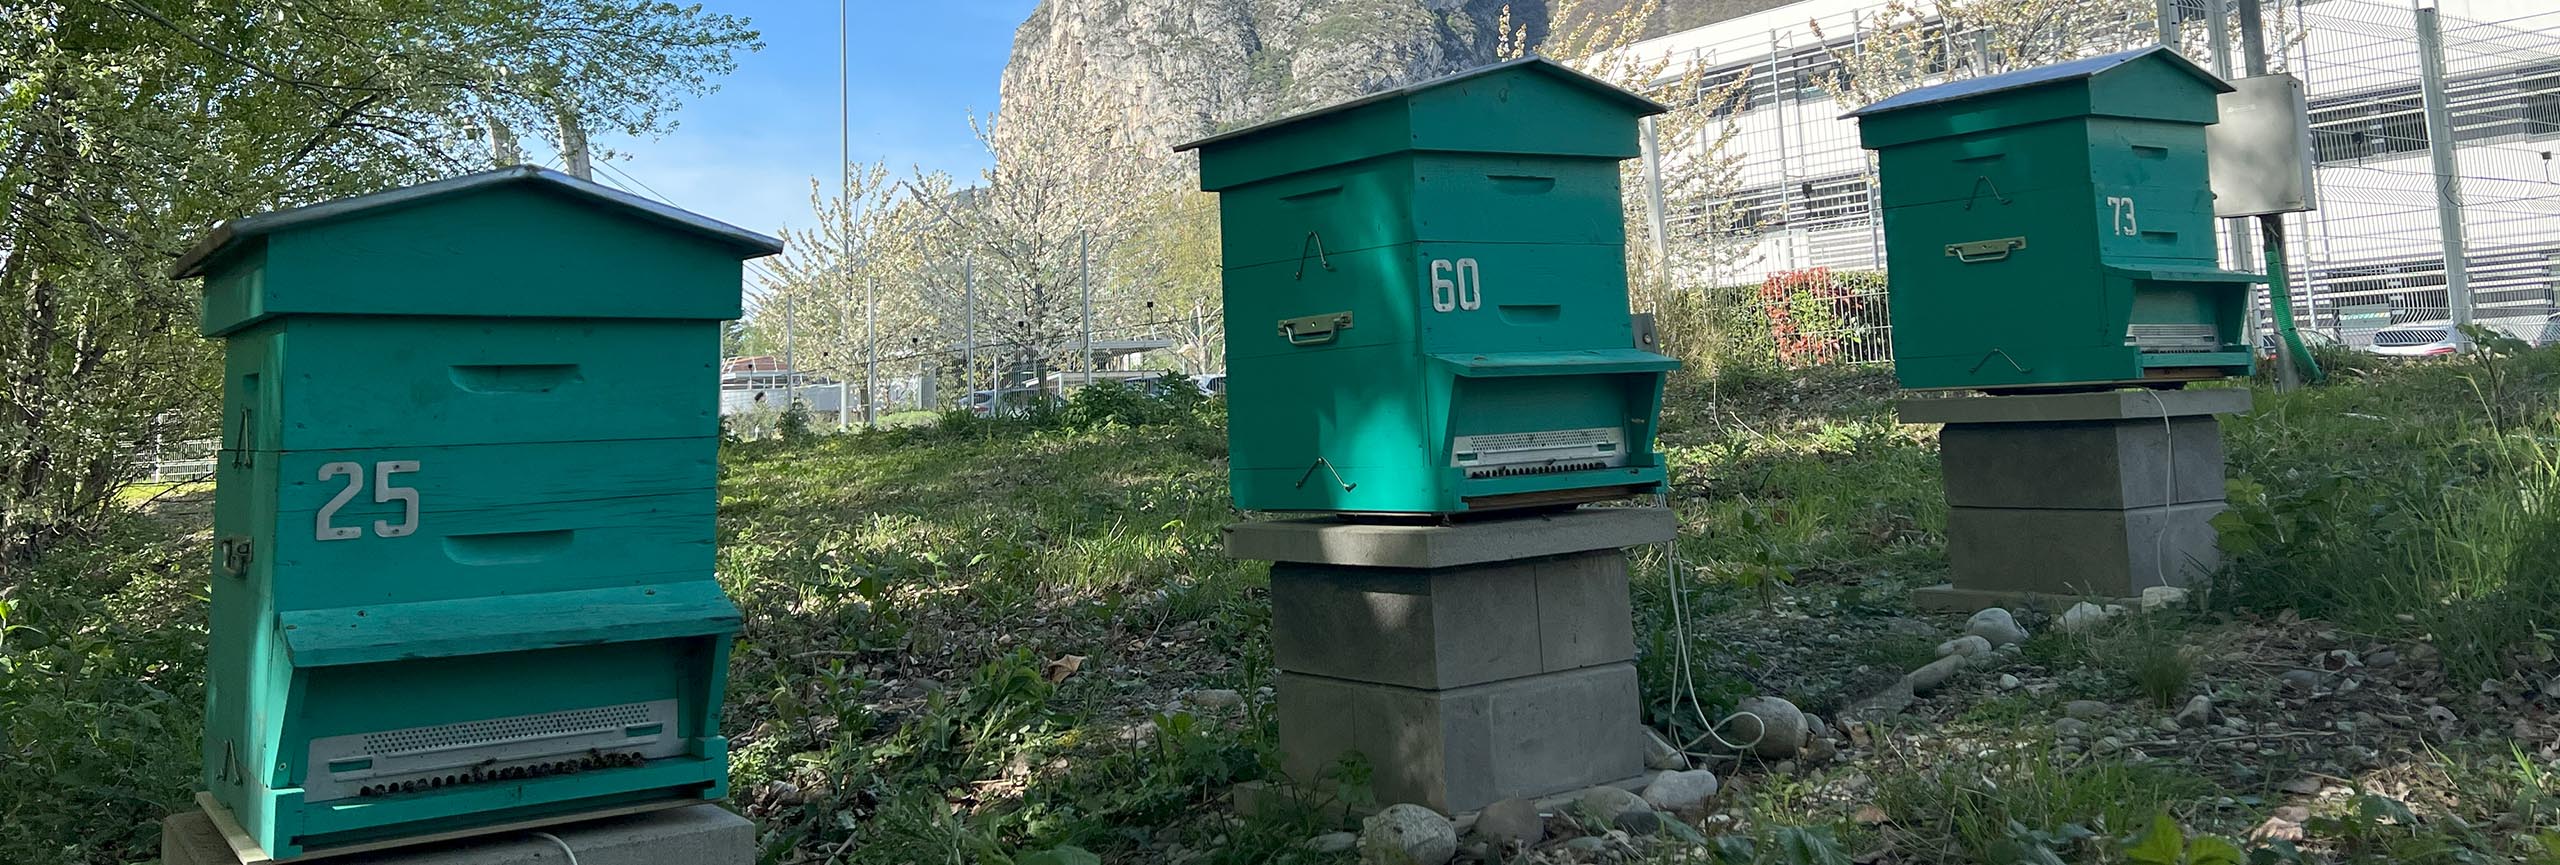 Bee Abeille rucher BioMerieux Grenoble